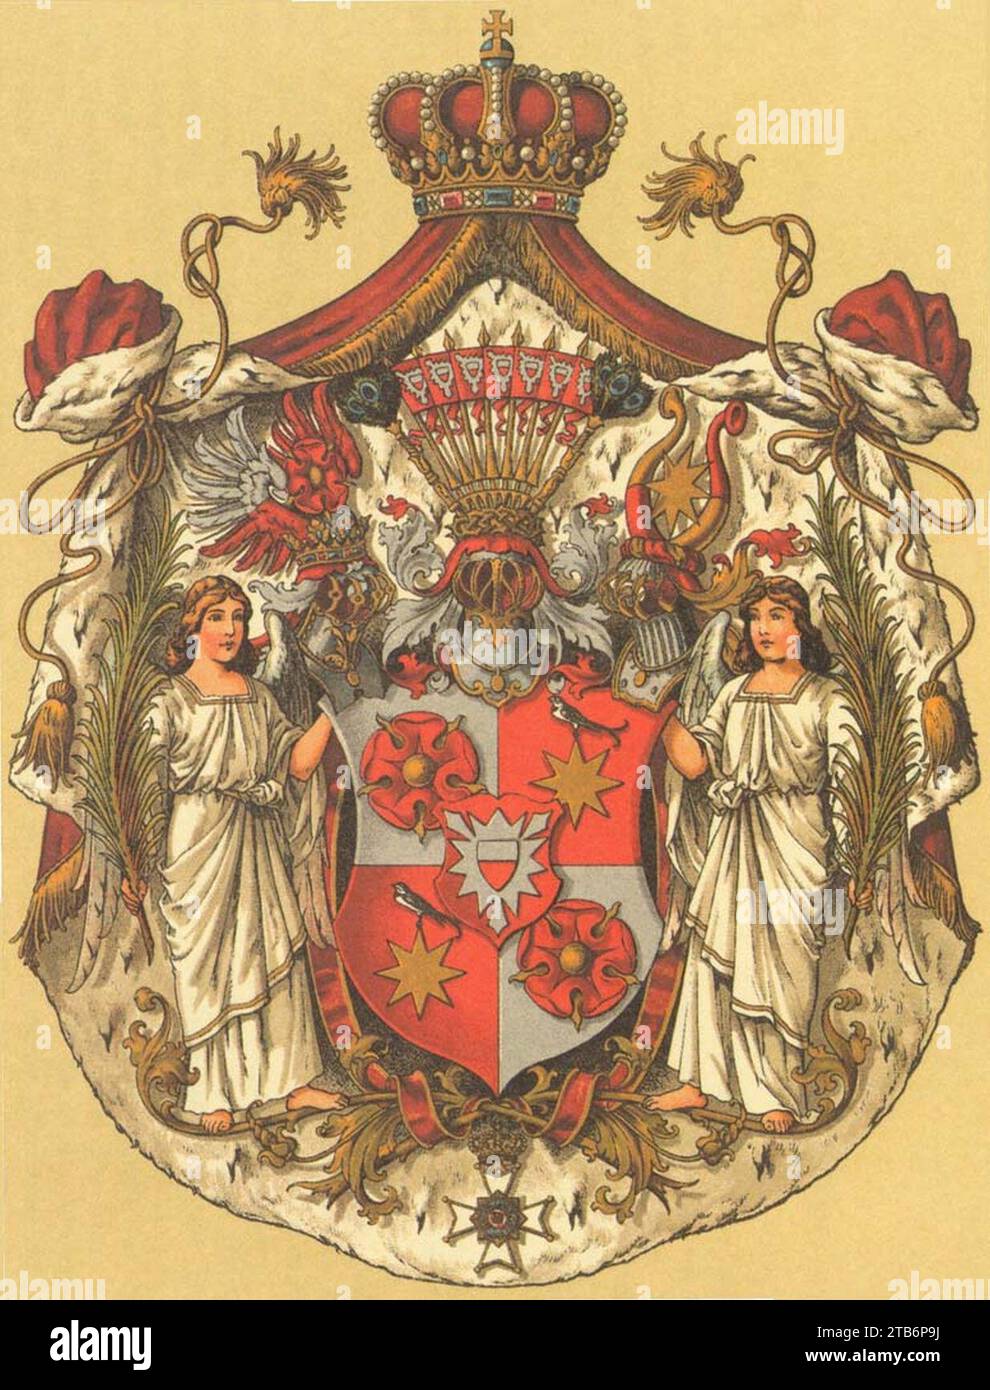 Wappen Deutsches Reich - Fürstentum Schaumburg-Lippe. Stock Photo